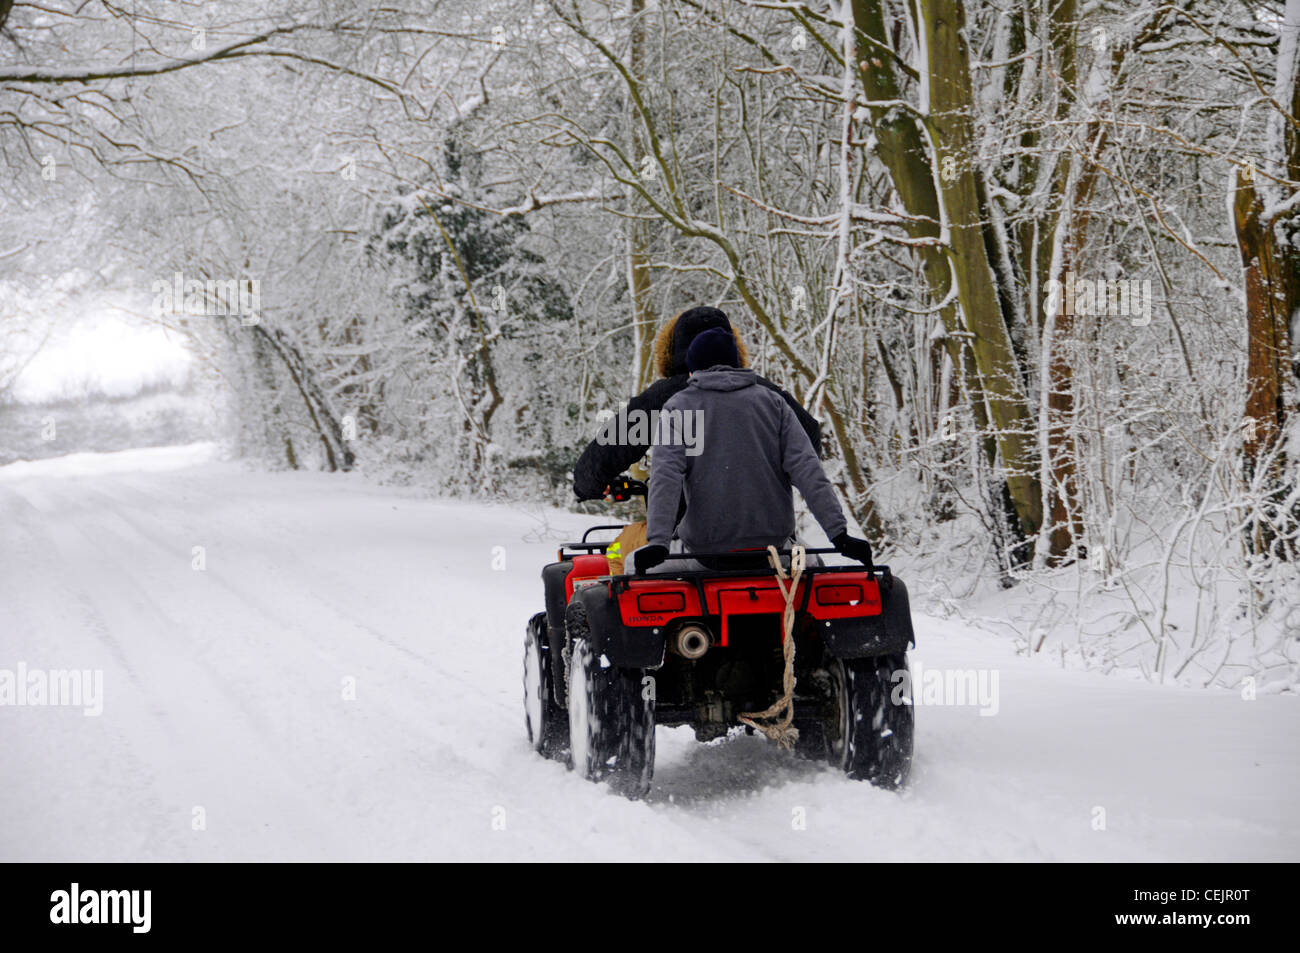 Pilote de quad et passager passager scène de neige conduite sur la voie de la route de campagne sous les arbres couverts de neige dans les merveilles hivernales Brentwood Essex Angleterre Royaume-Uni Banque D'Images